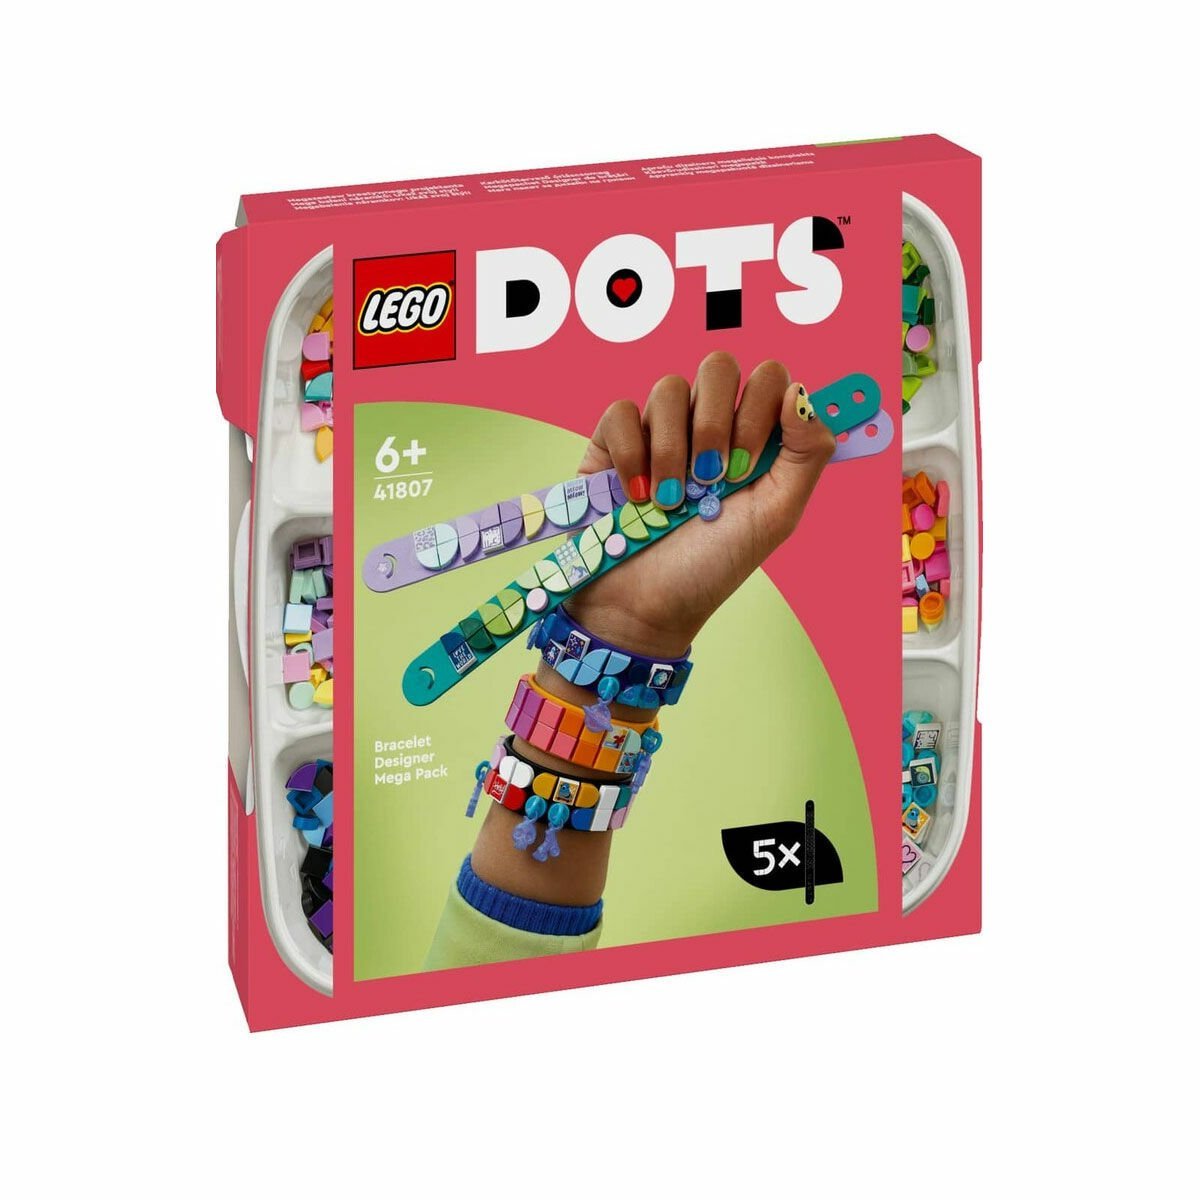 41807 Lego Dots - Bileklik Tasarımcısı Mega Paket 388 parça, +6 yaş